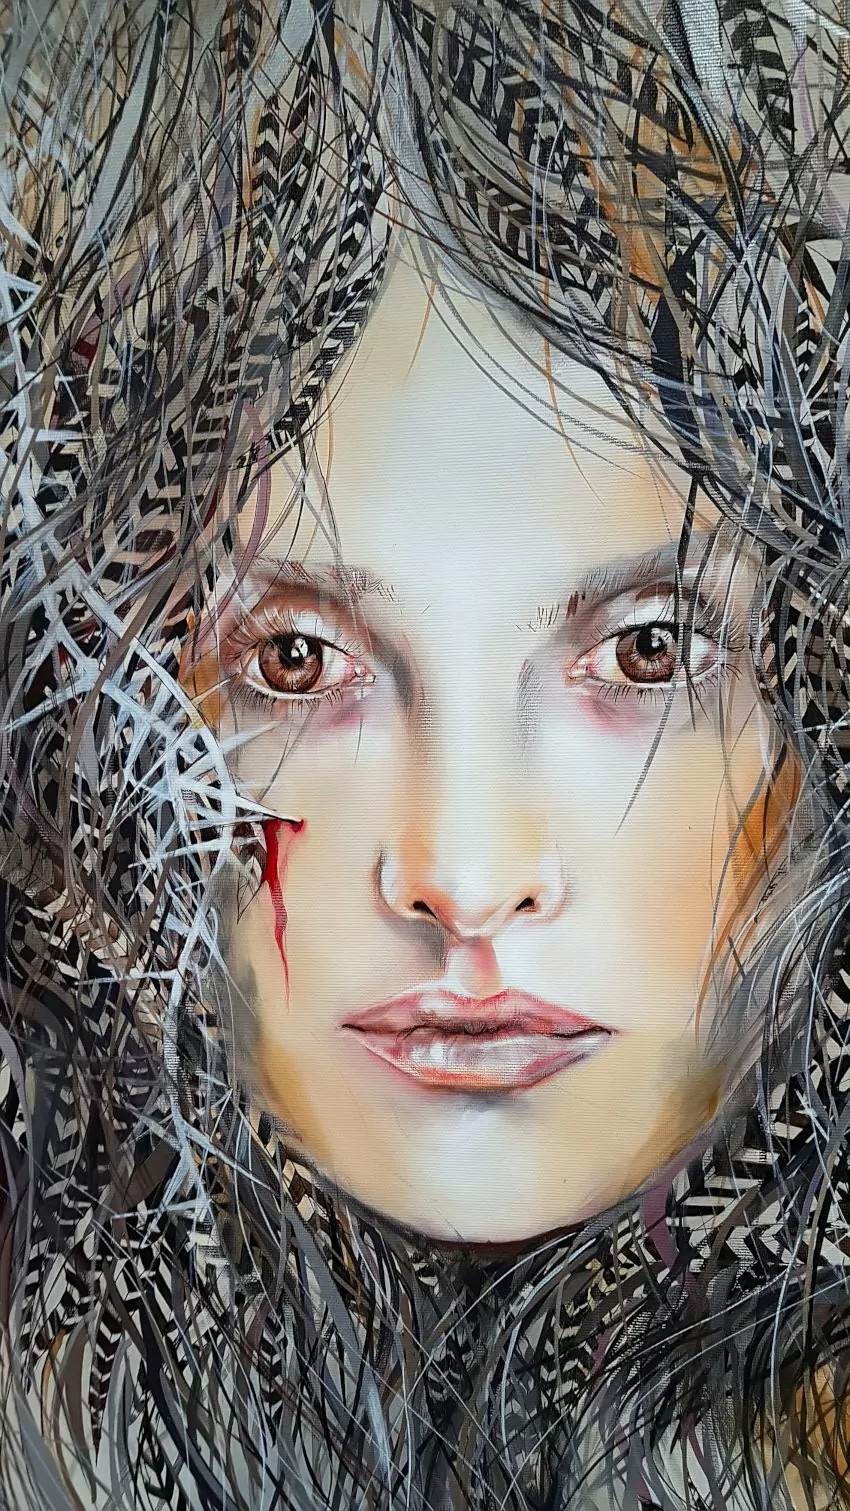 Targi Gift&Deco, obraz malarki Maggie Piu, obrazy z kobietą, twarz zakrwawiona otoczona szarymi piórami, na twarzy skaleczenie z którego wydobywa się krew